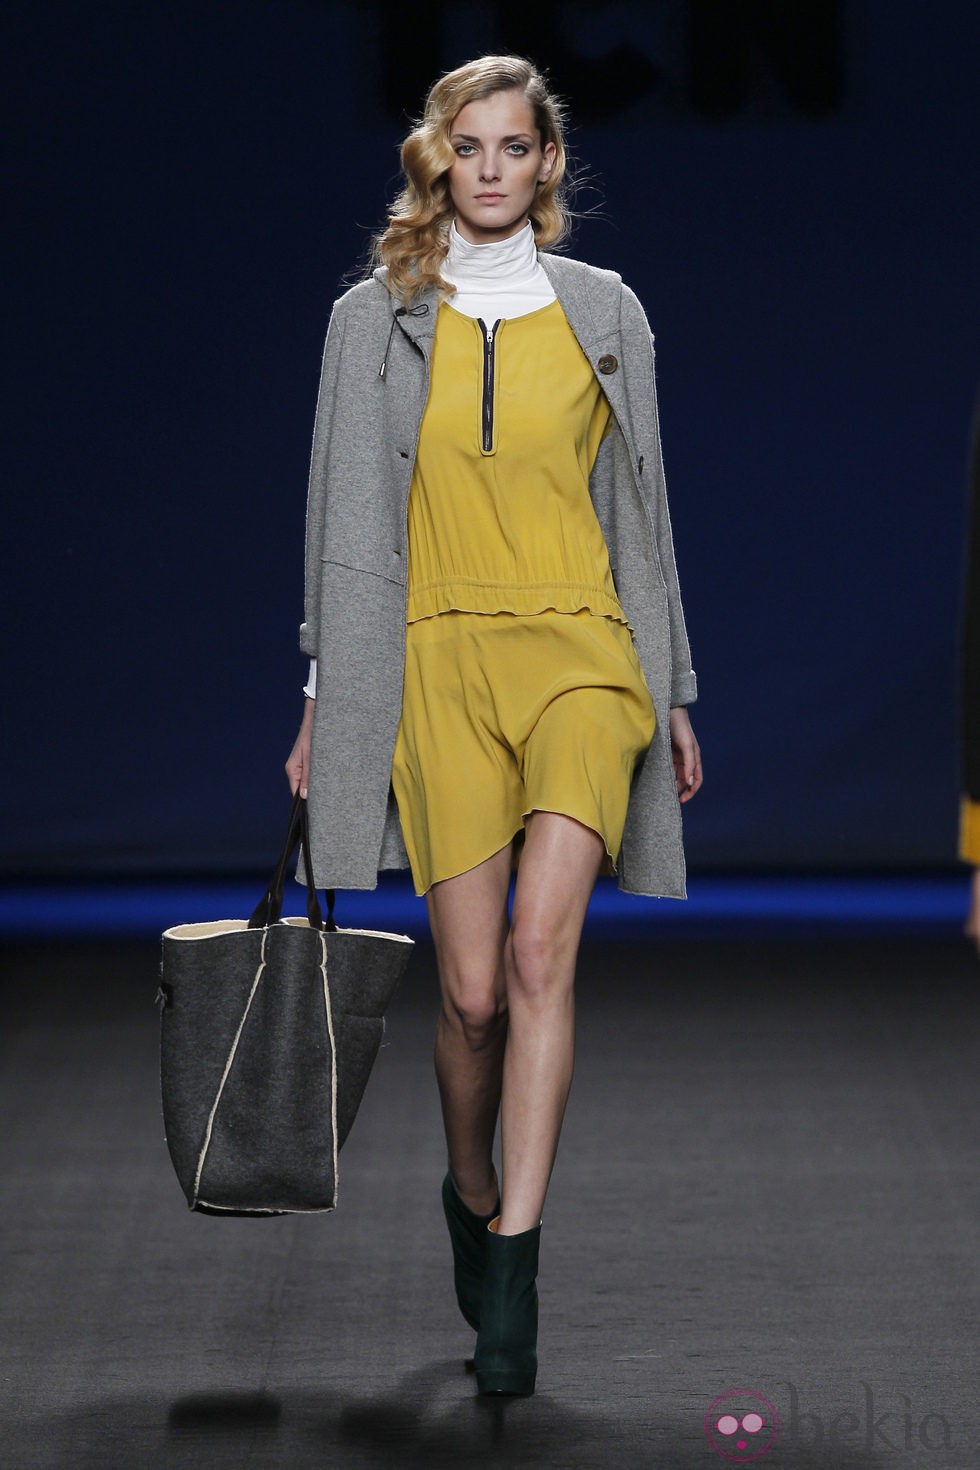 Vestido amarillo con abrigo gris perla de TCN en la Fashion Week Madrid